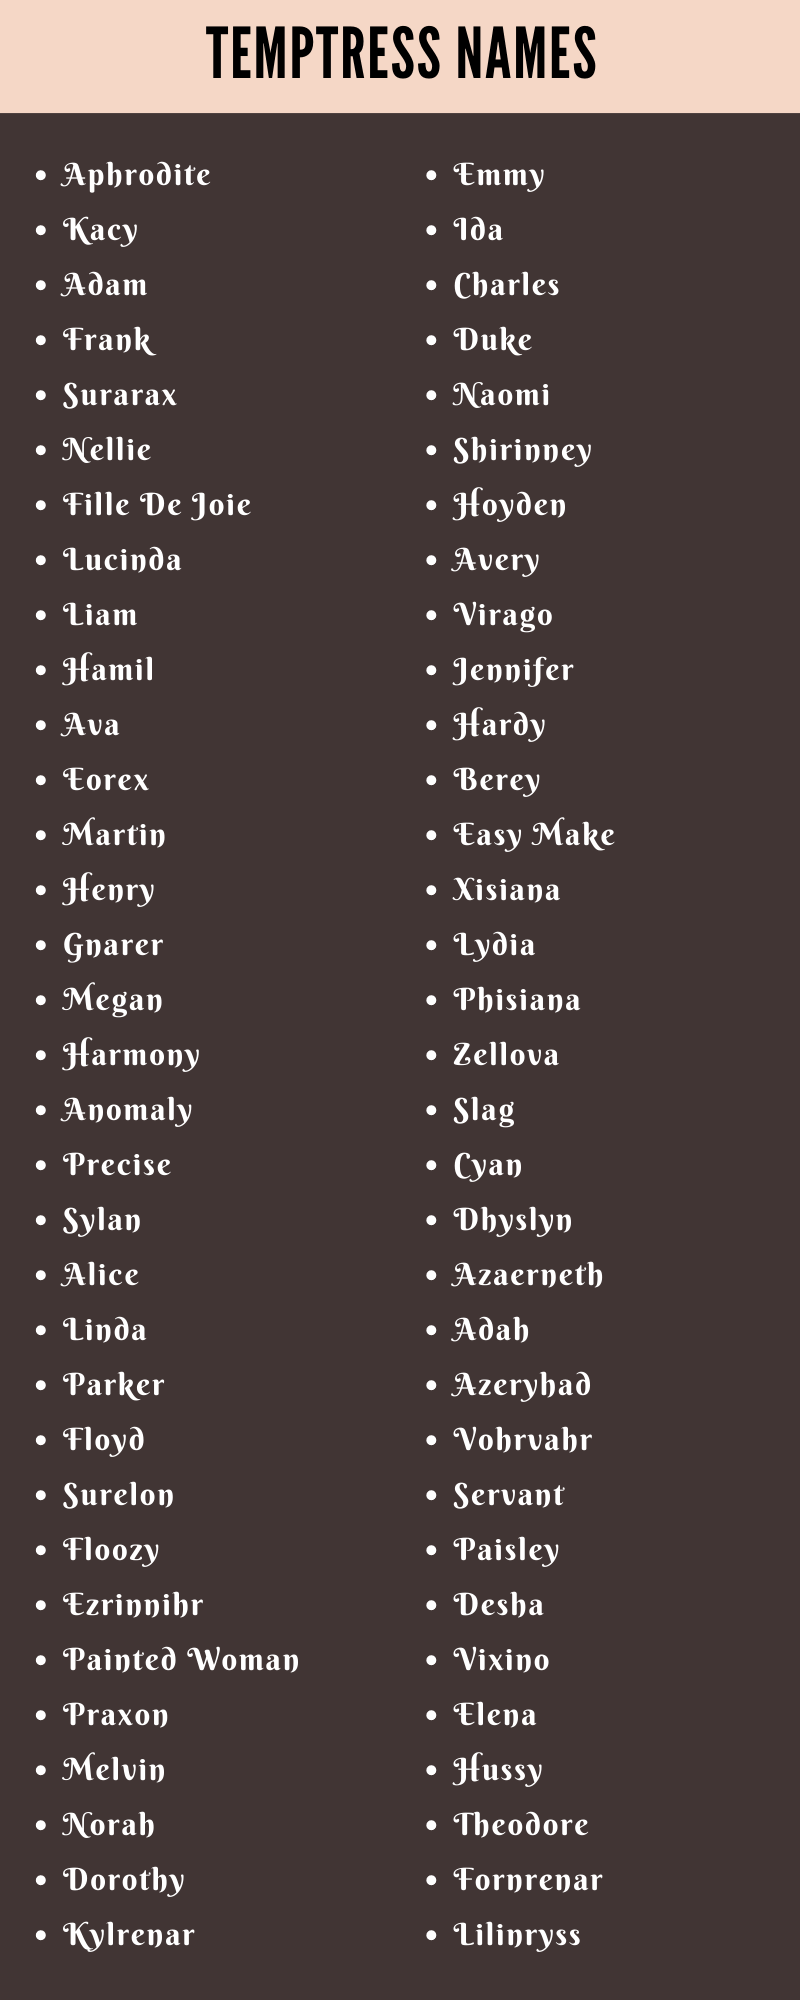 Temptress Names